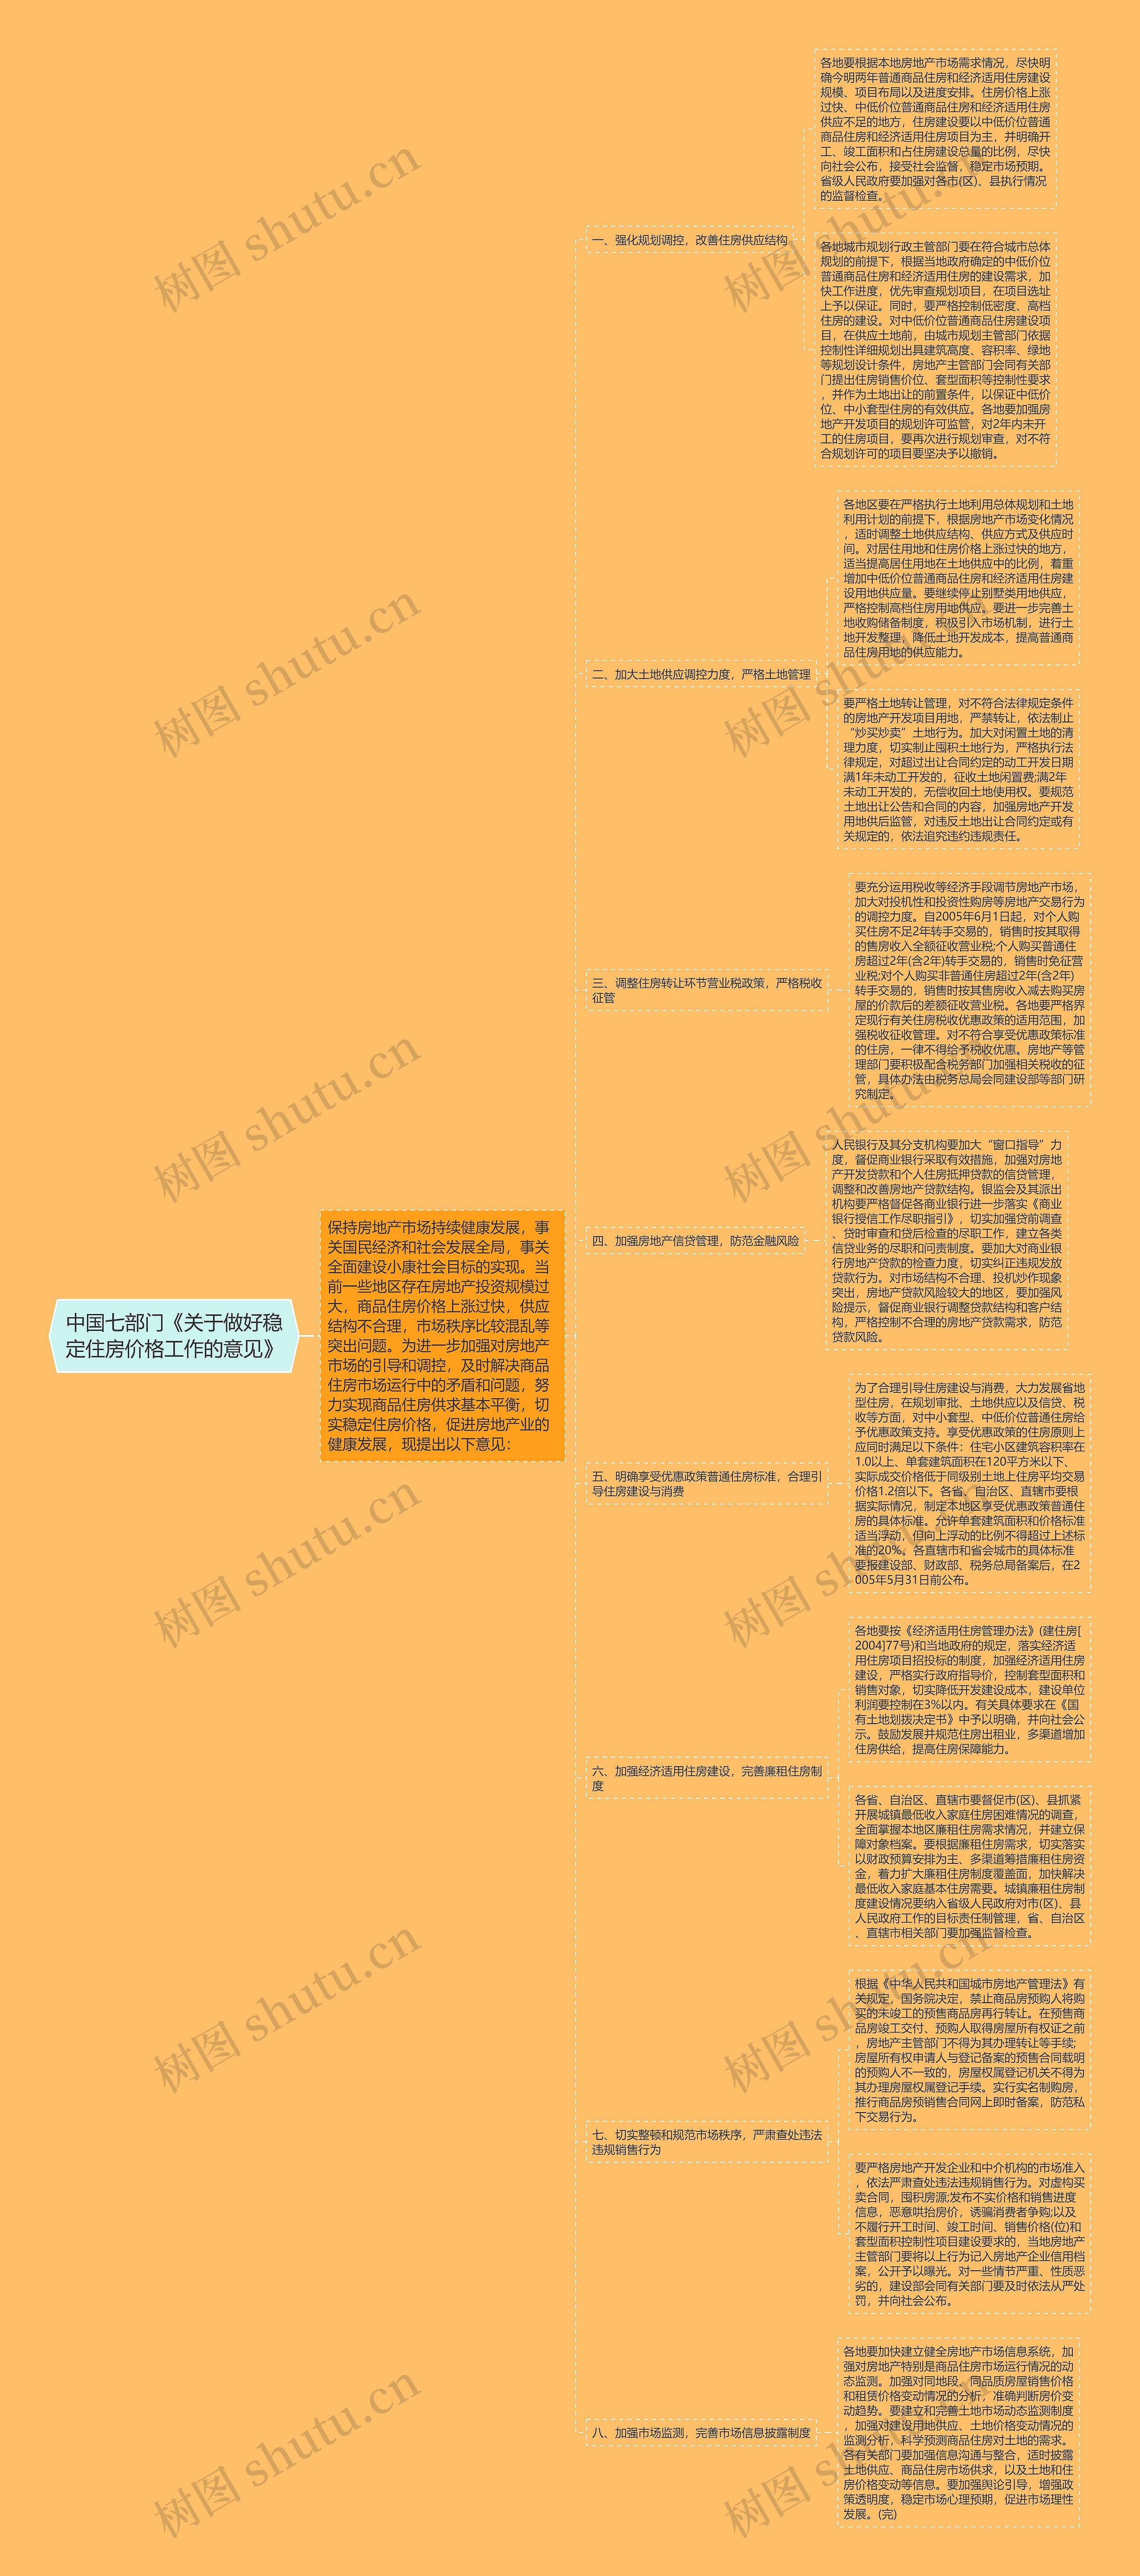 中国七部门《关于做好稳定住房价格工作的意见》思维导图